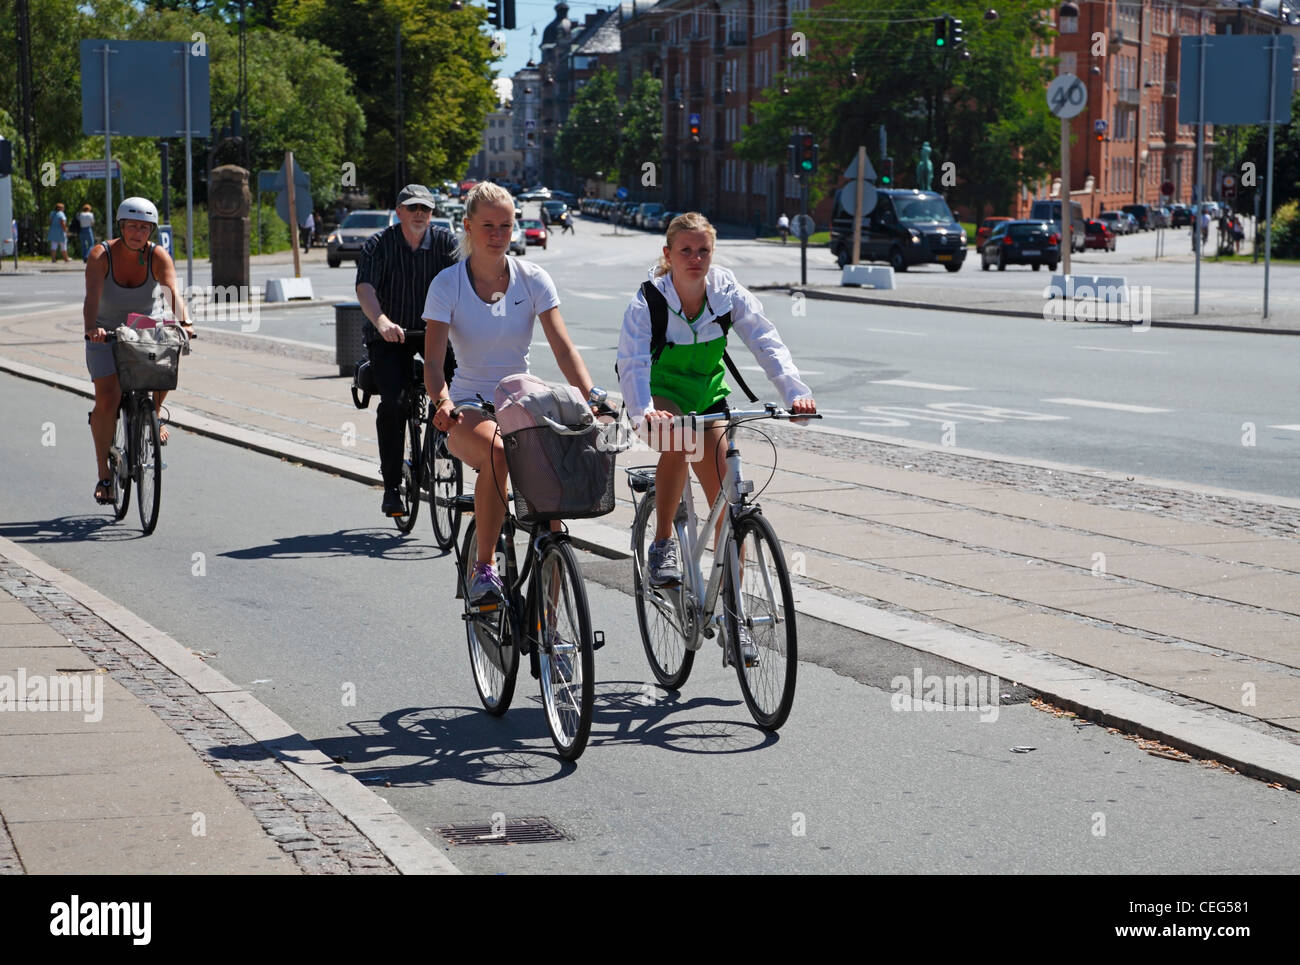 Mädchen Radfahren in Kopenhagen, Dänemark, auf einem der vielen Fahrradwege entlang der Straßen - am Bahnhof Østerport in Oslo Plads. Stockfoto